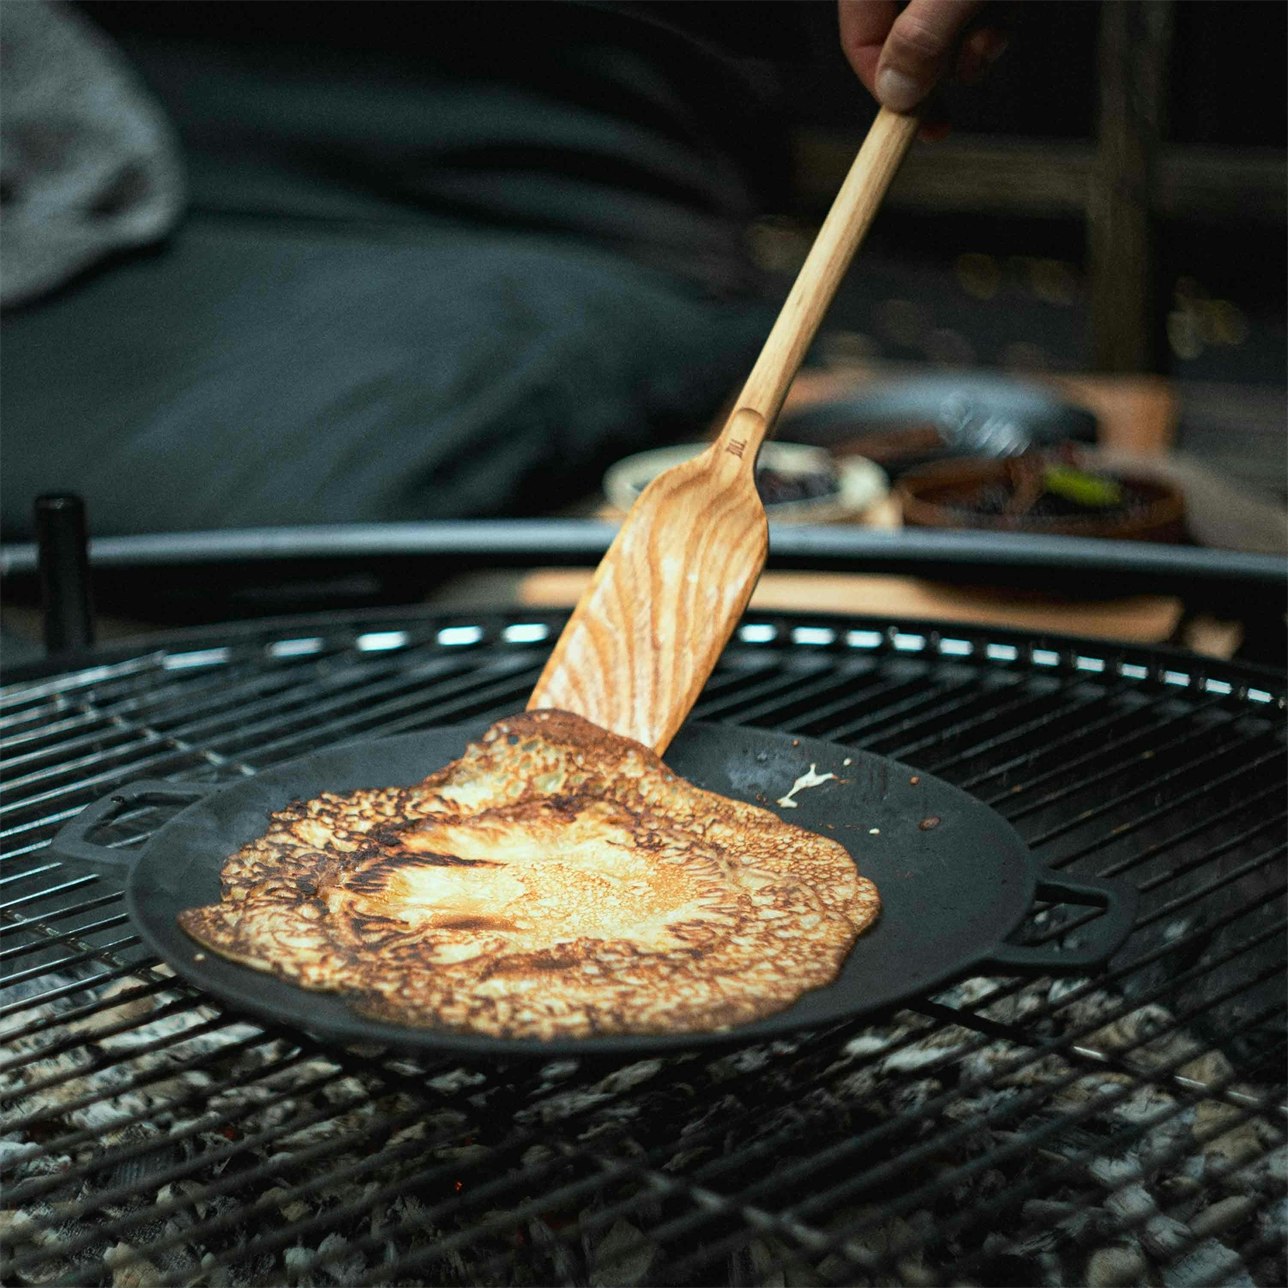 Cast Iron Frying Pan, 29 cm - Satake @ RoyalDesign